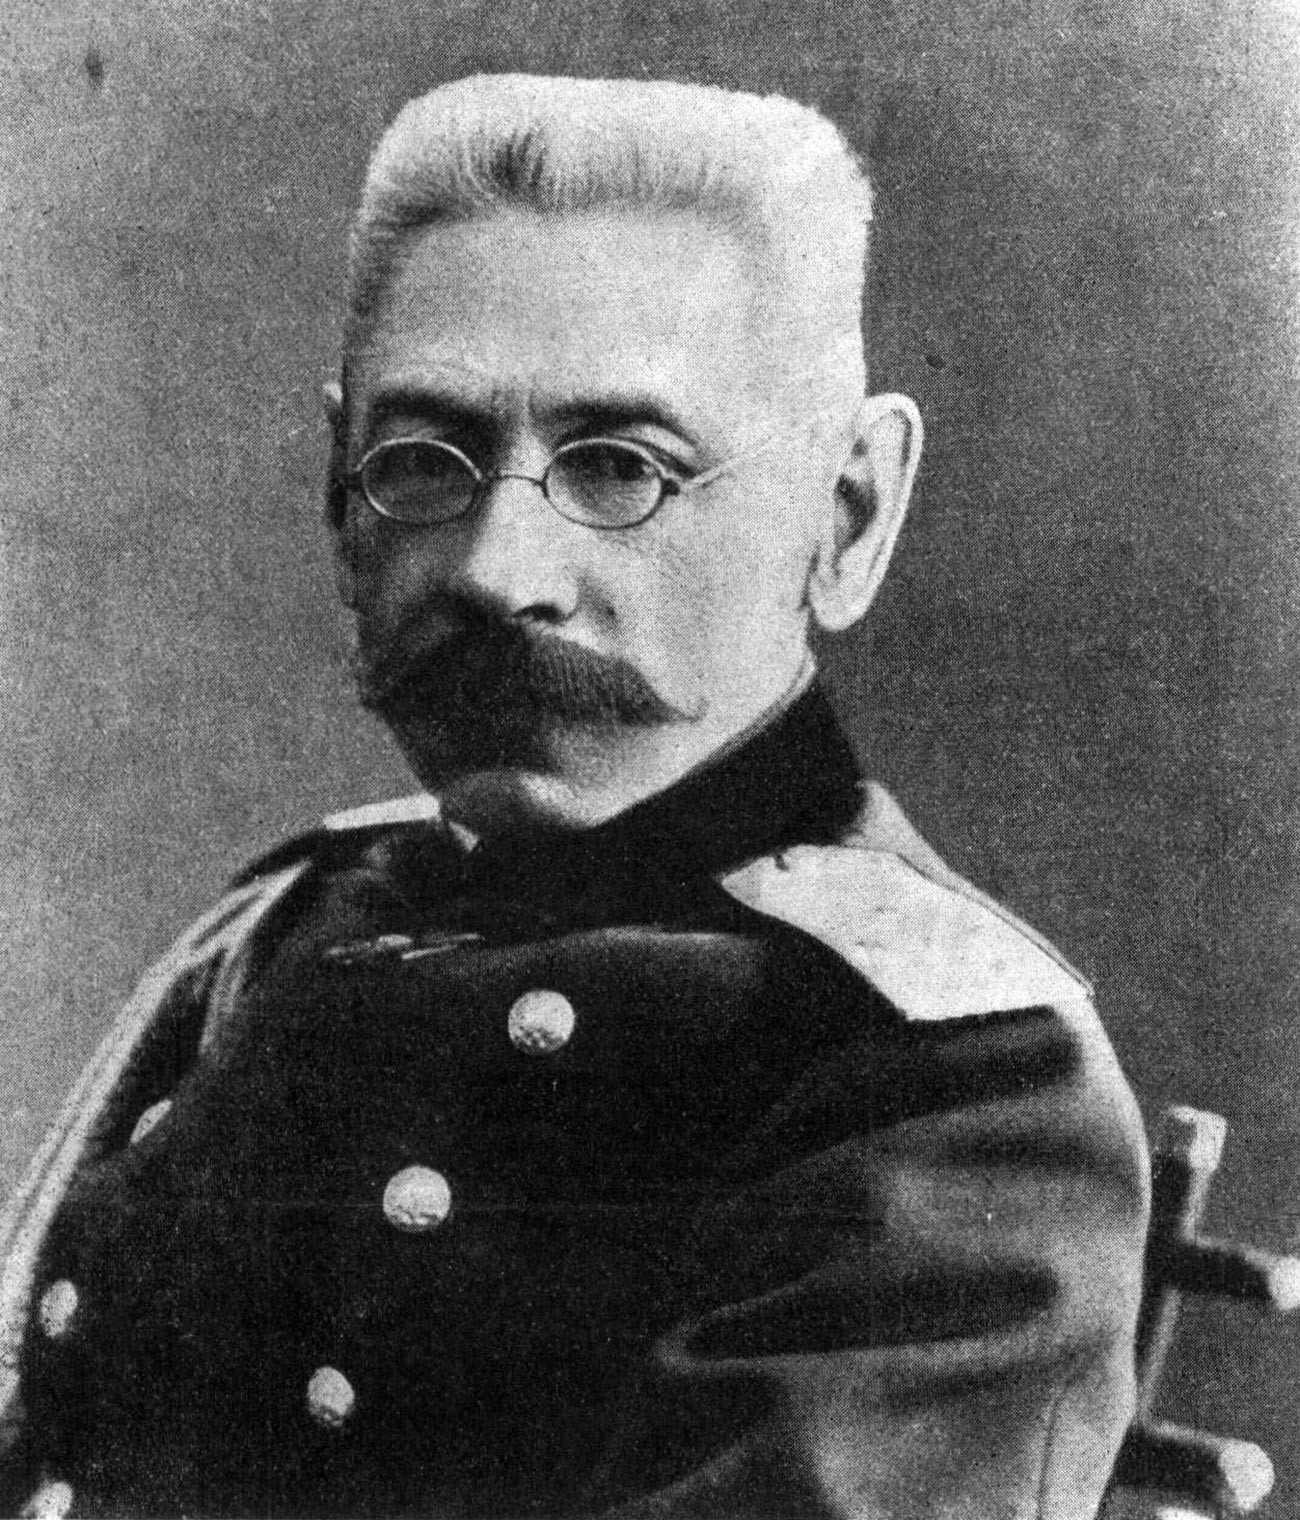 Николай Рузки, 1914 г.

